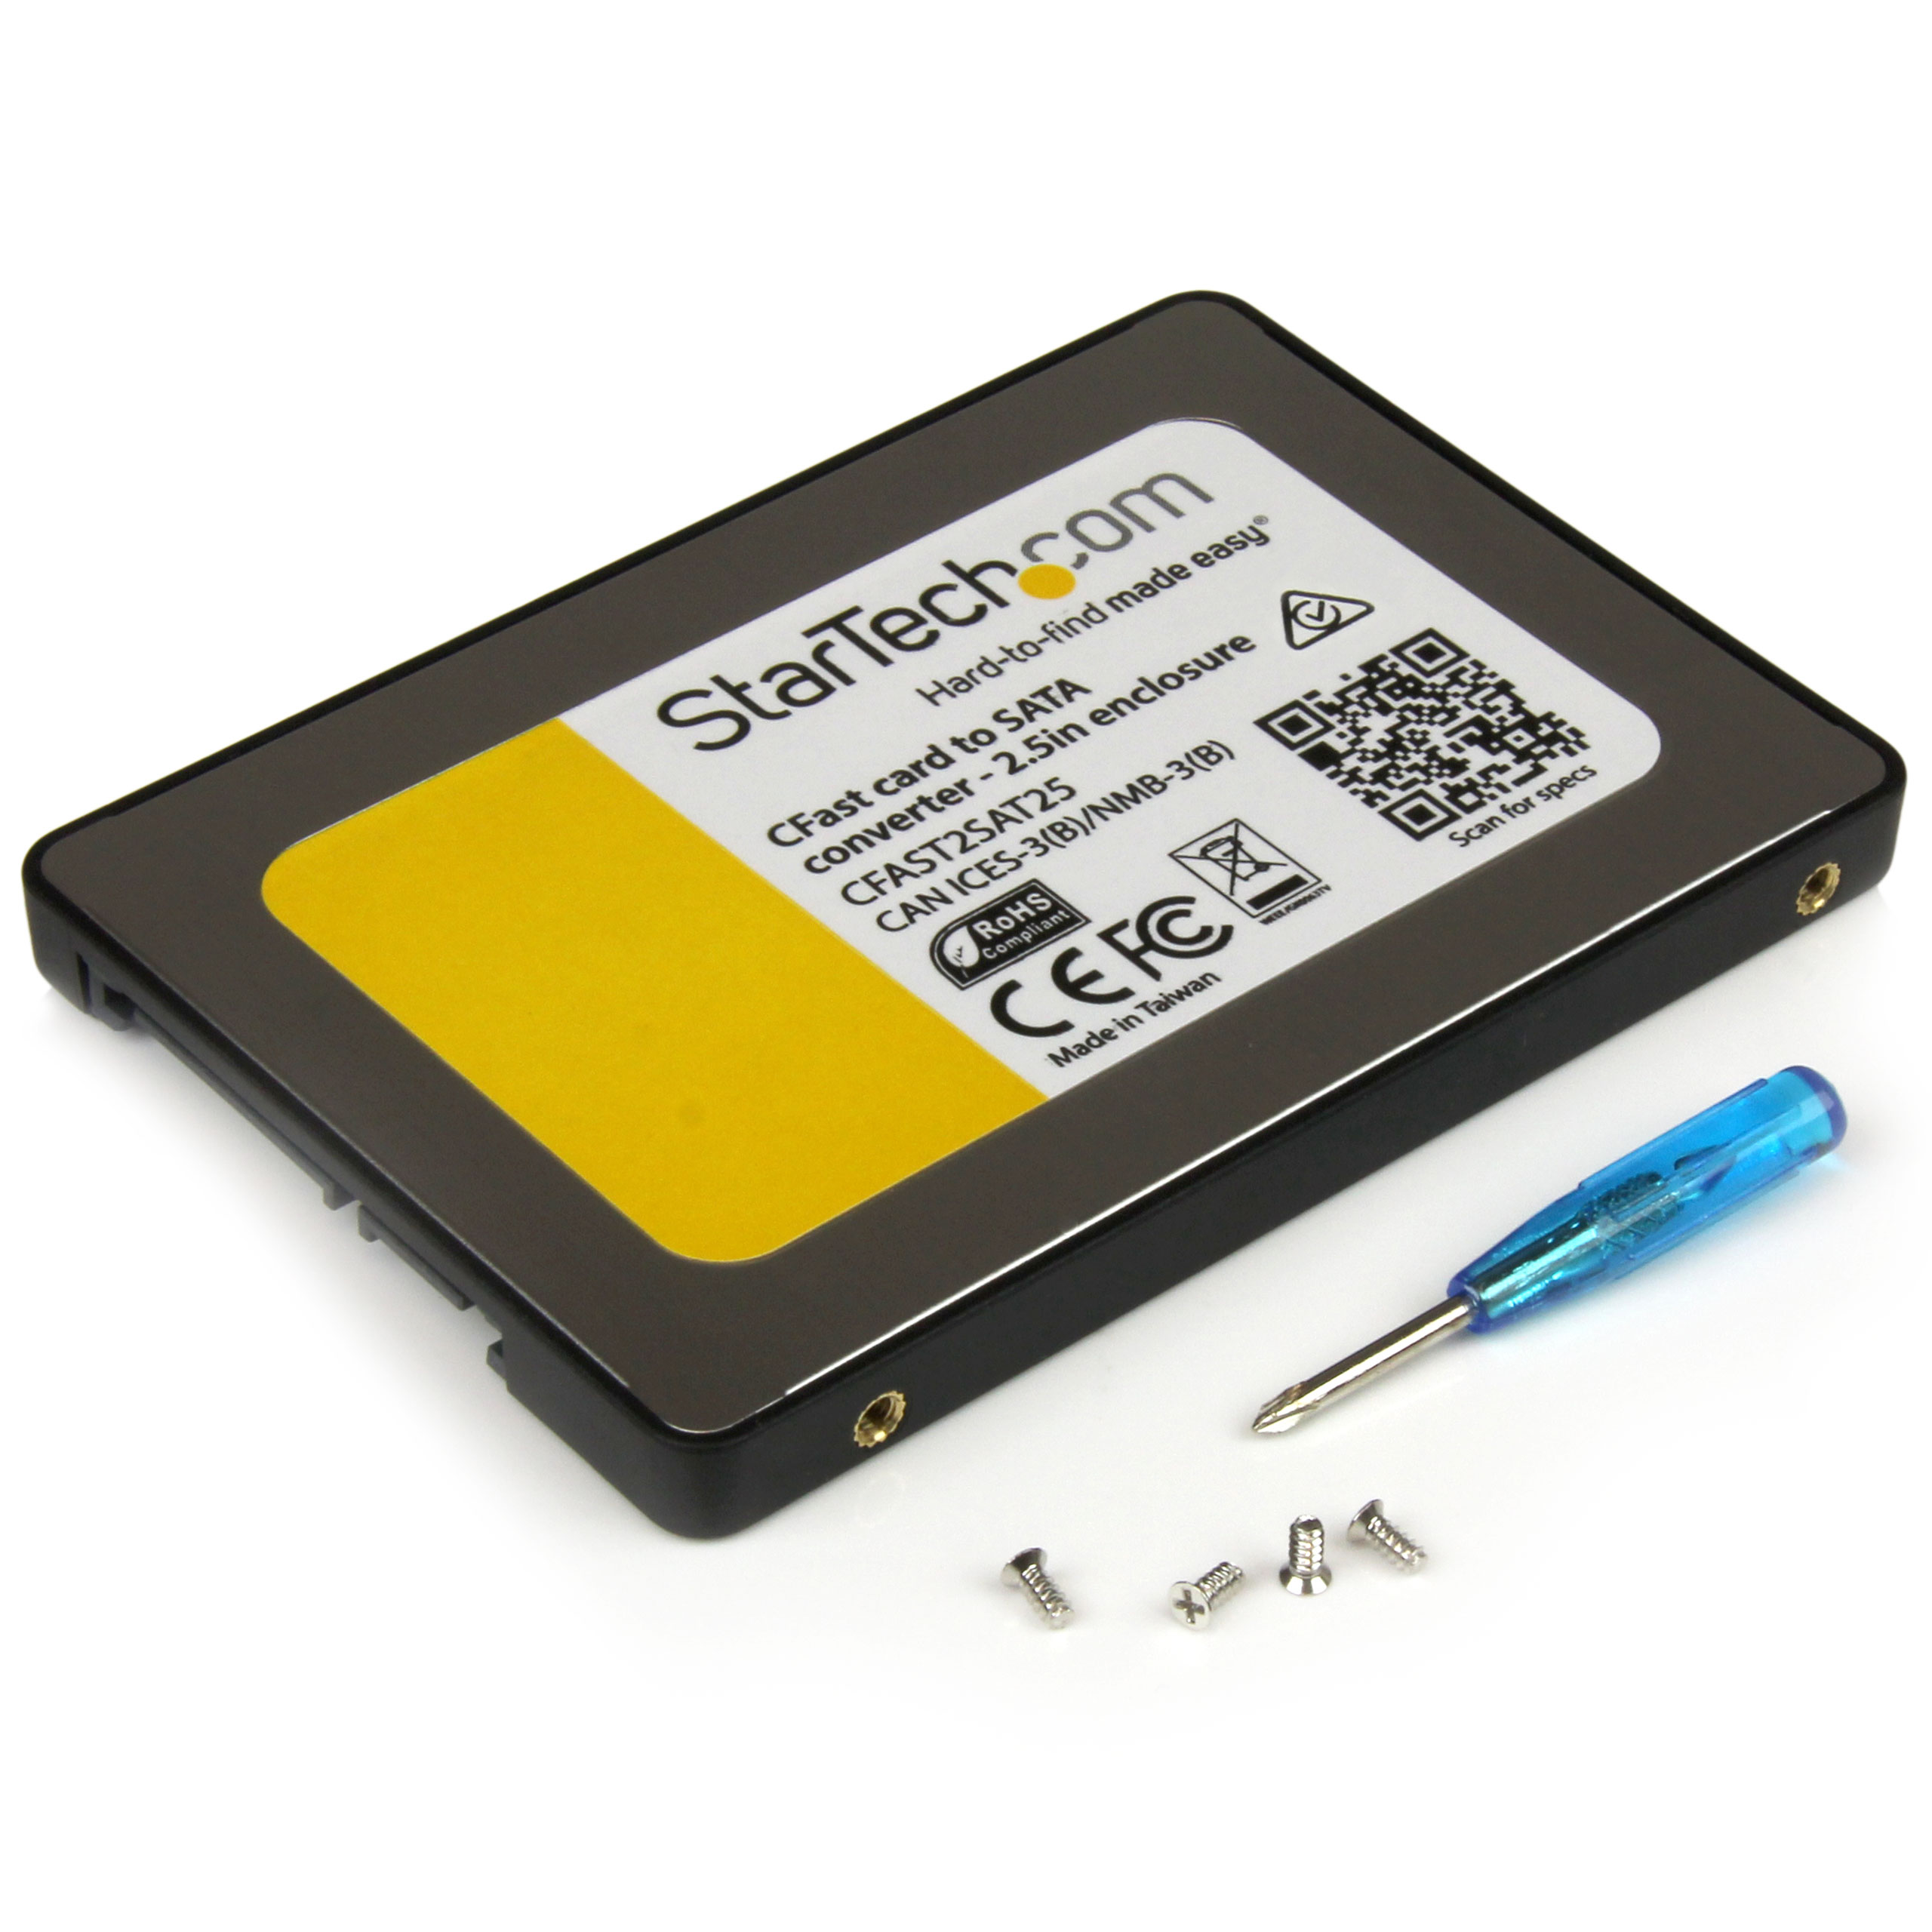 ST BRACKET225PT: Support de montage pour 2 disques durs - SSD de 2